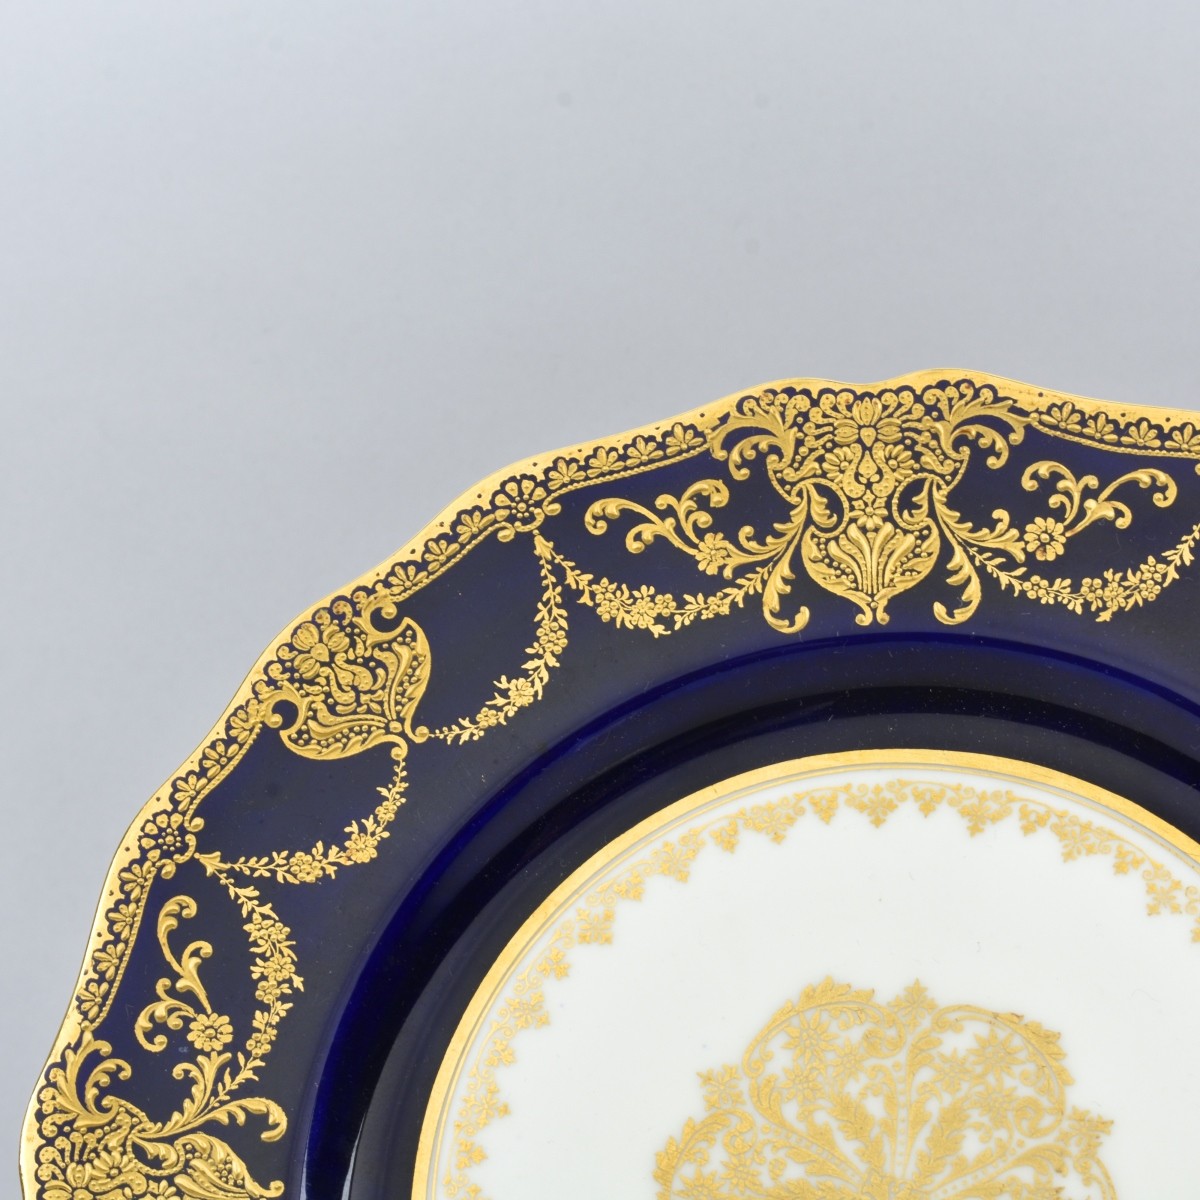 Pair of Royal Doulton Tiffany & Co Plates